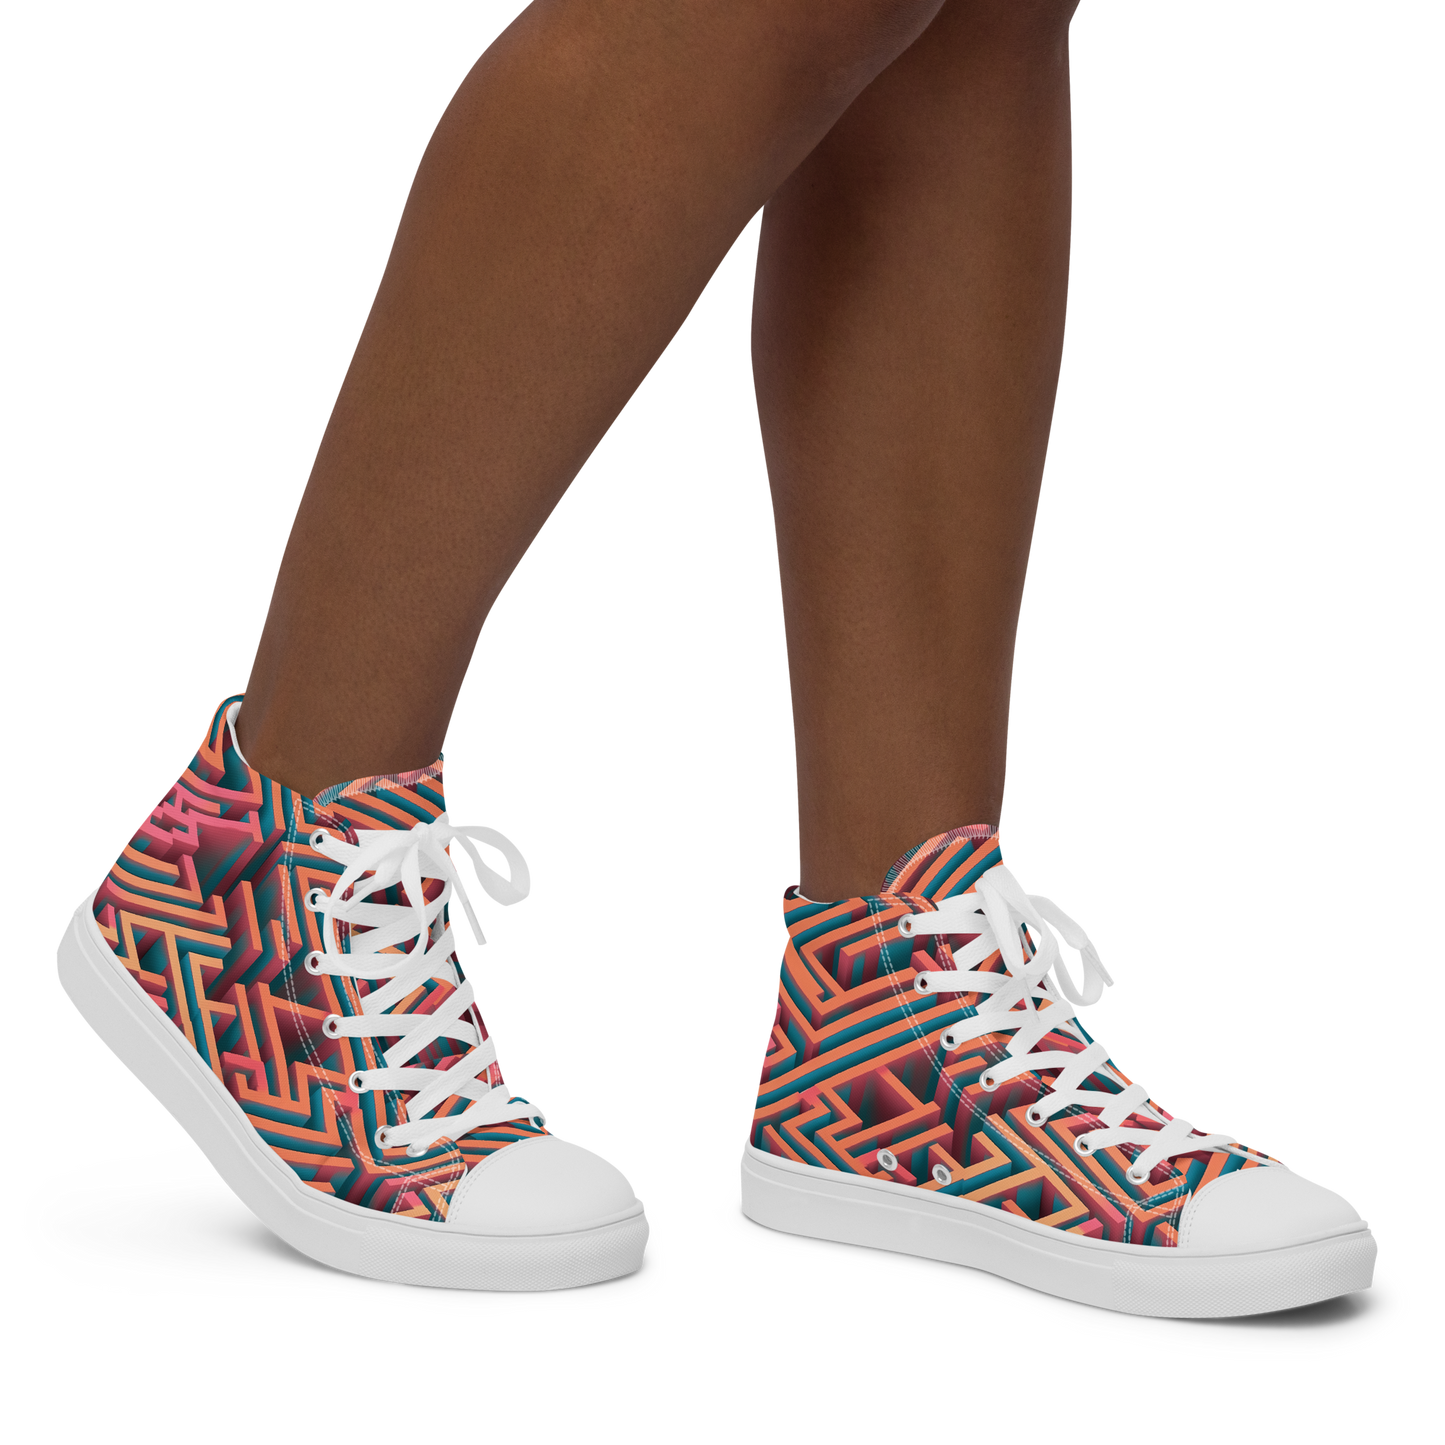 3D Maze Illusion | 3D Patterns | Women's High Top Canvas Shoes - #1